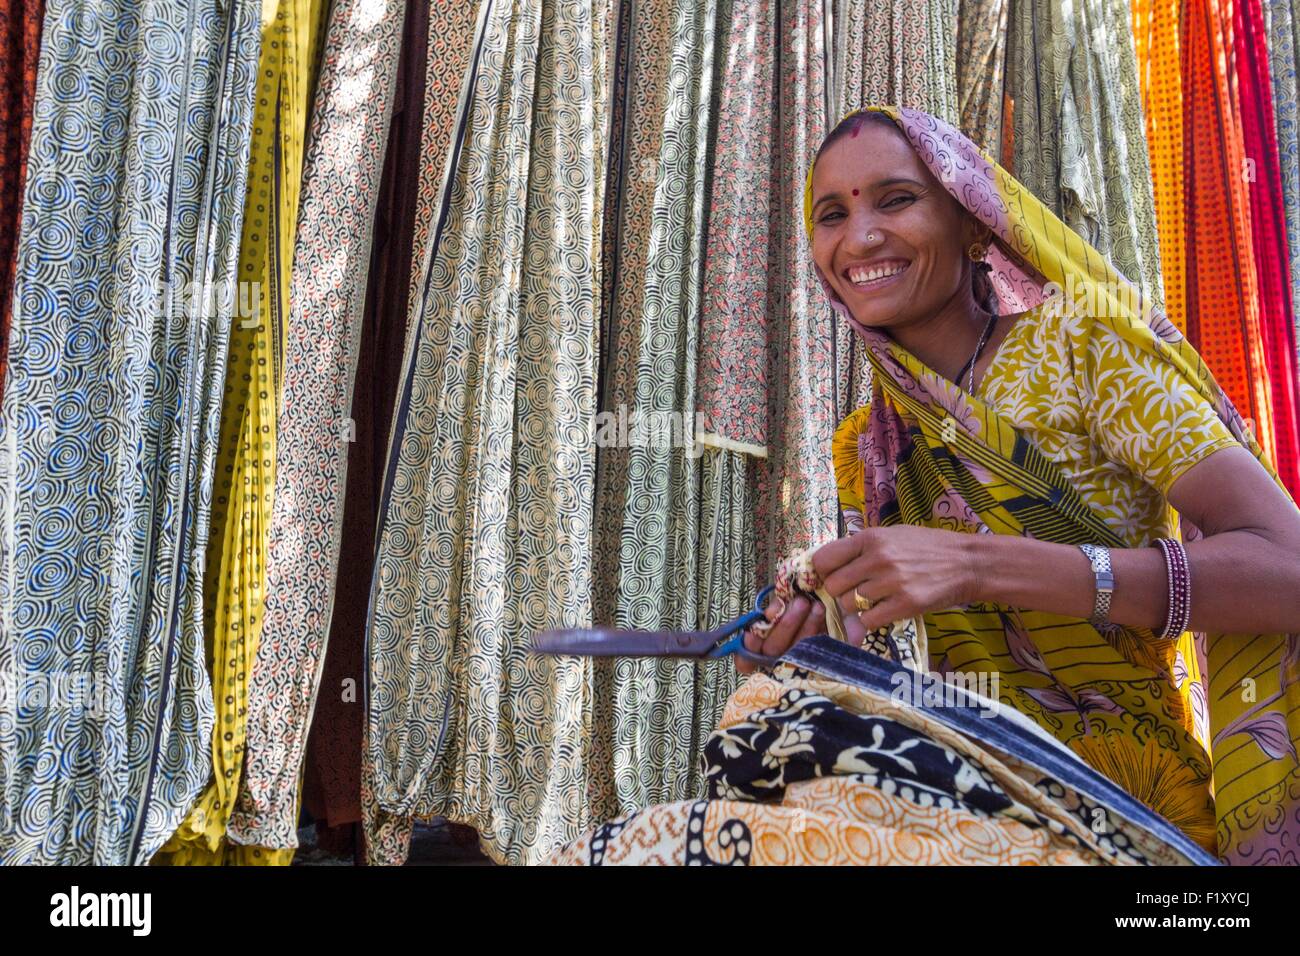 Indien, Rajasthan State Sanganer, Textilfabrik, Textilien schneiden Stockfoto